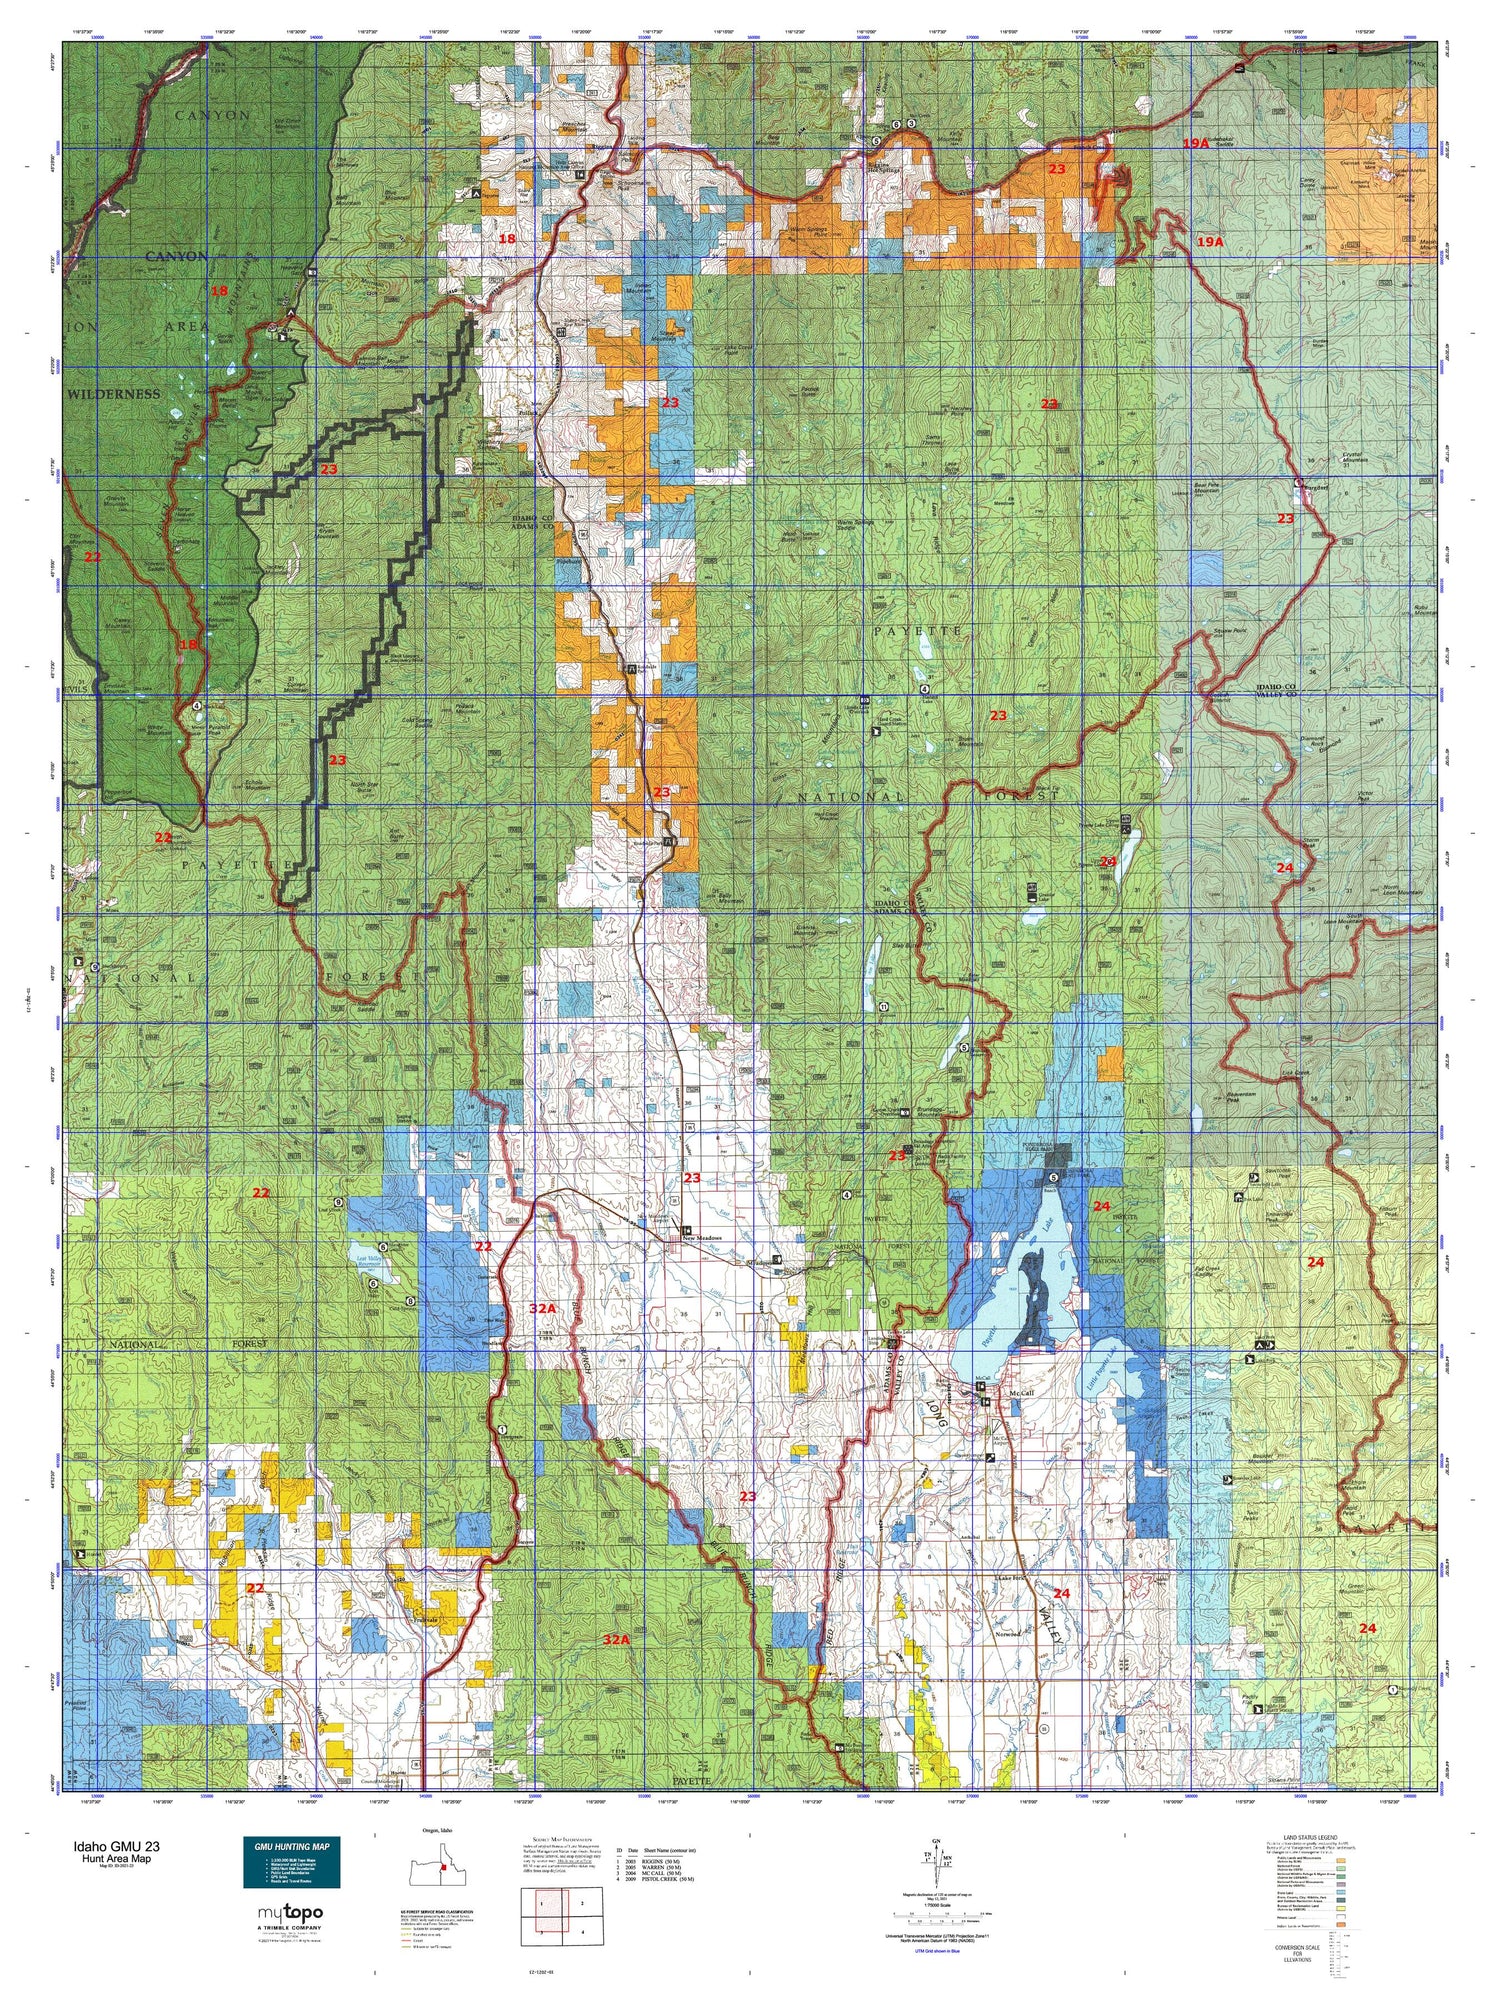 Idaho GMU 23 Map Image